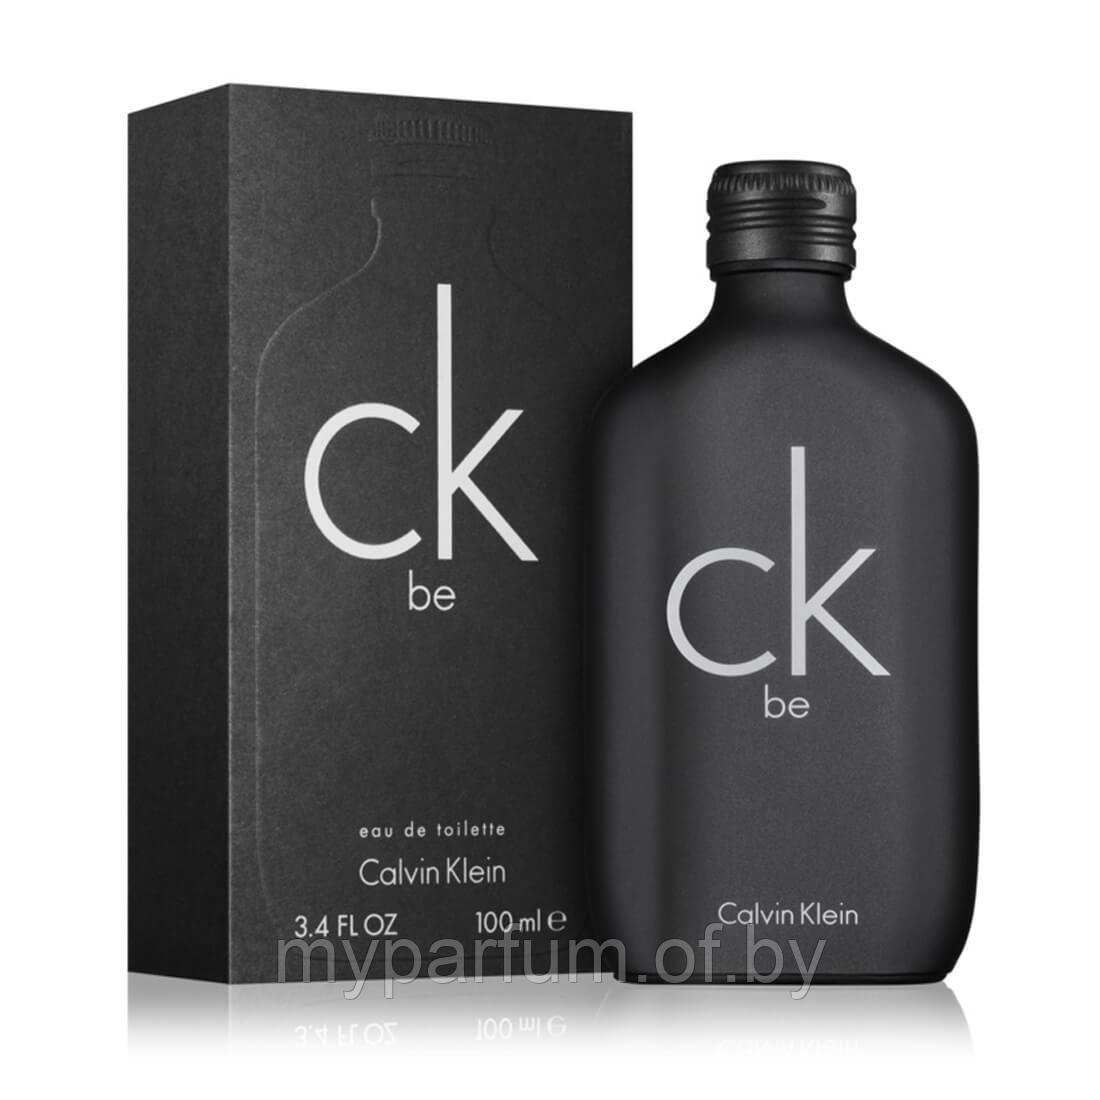 Унисекс туалетная вода Calvin Klein CK Be edt 100ml